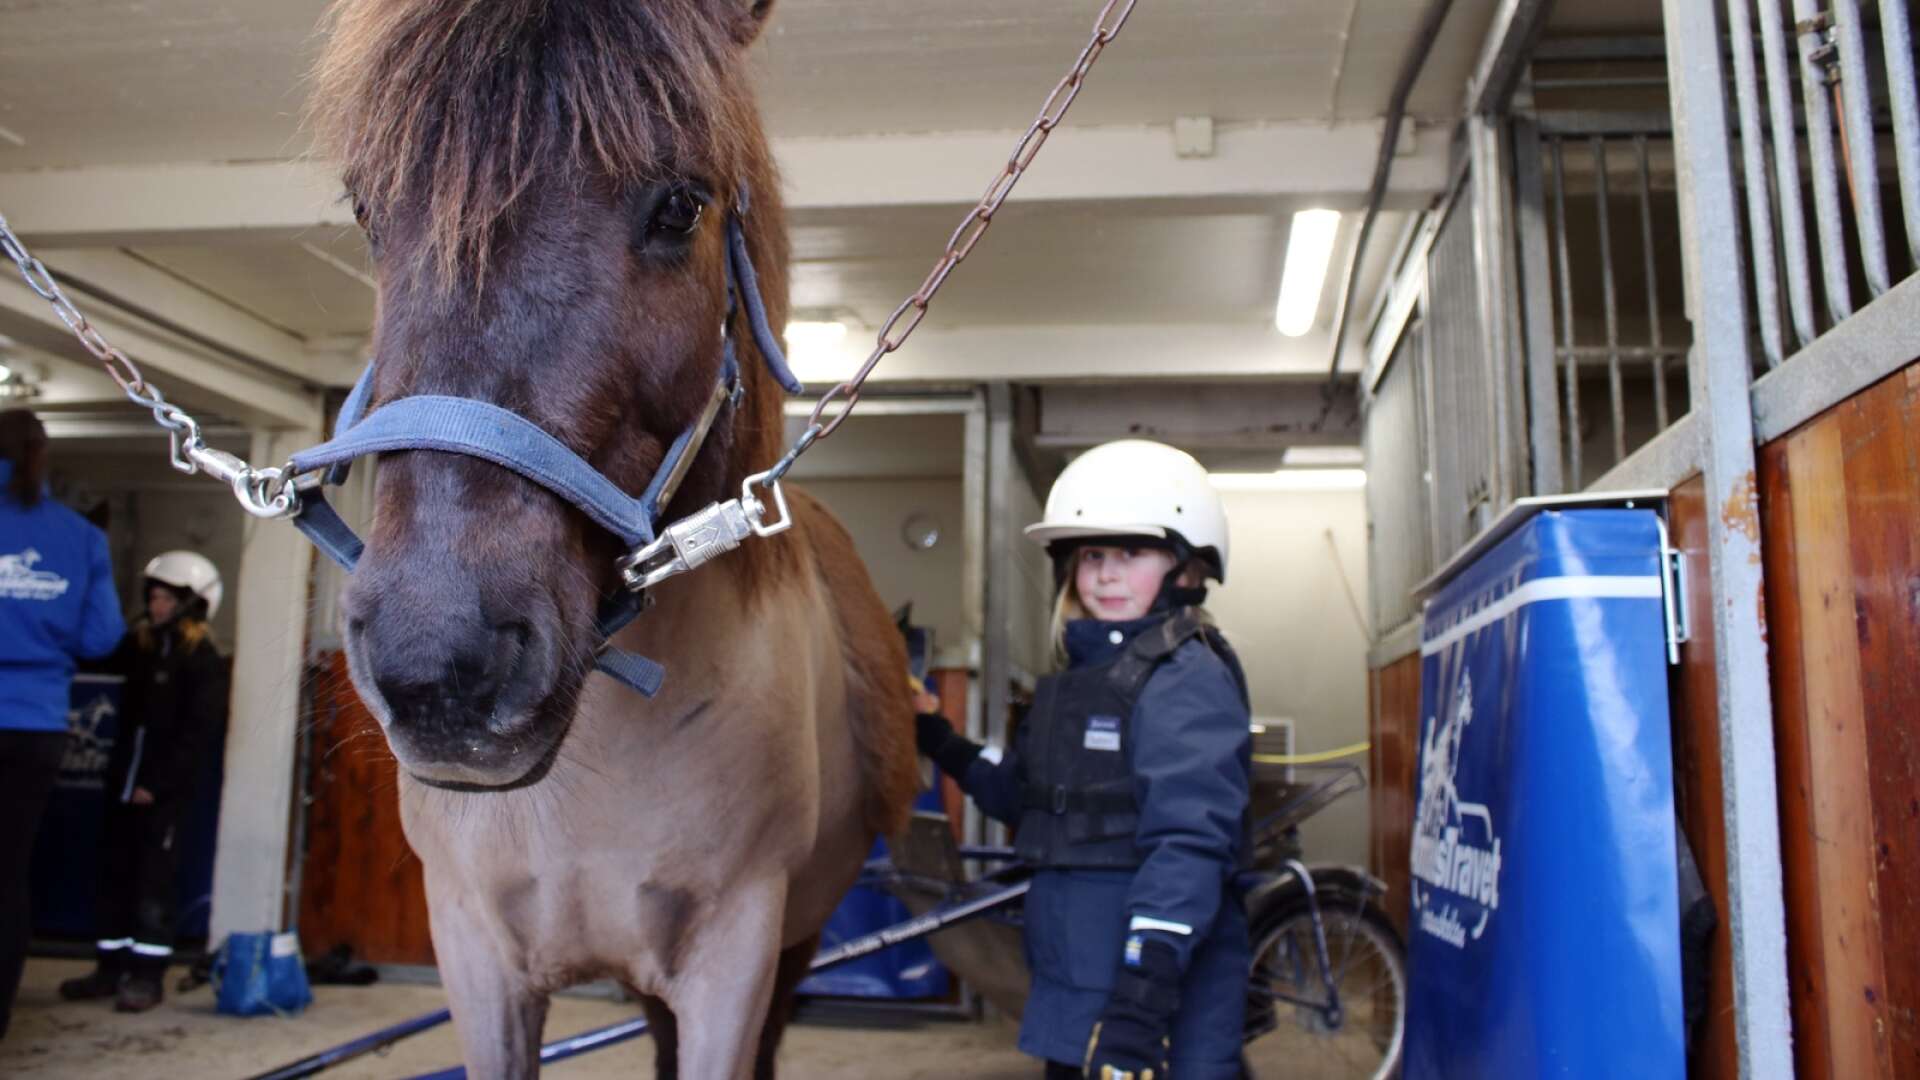 Kanske är hästar något för dig? Under sportlovet har du chansen att testa. Hilda Johansson hängde med ponnyerna på Åmåls Travskola under sportlovet 2021.